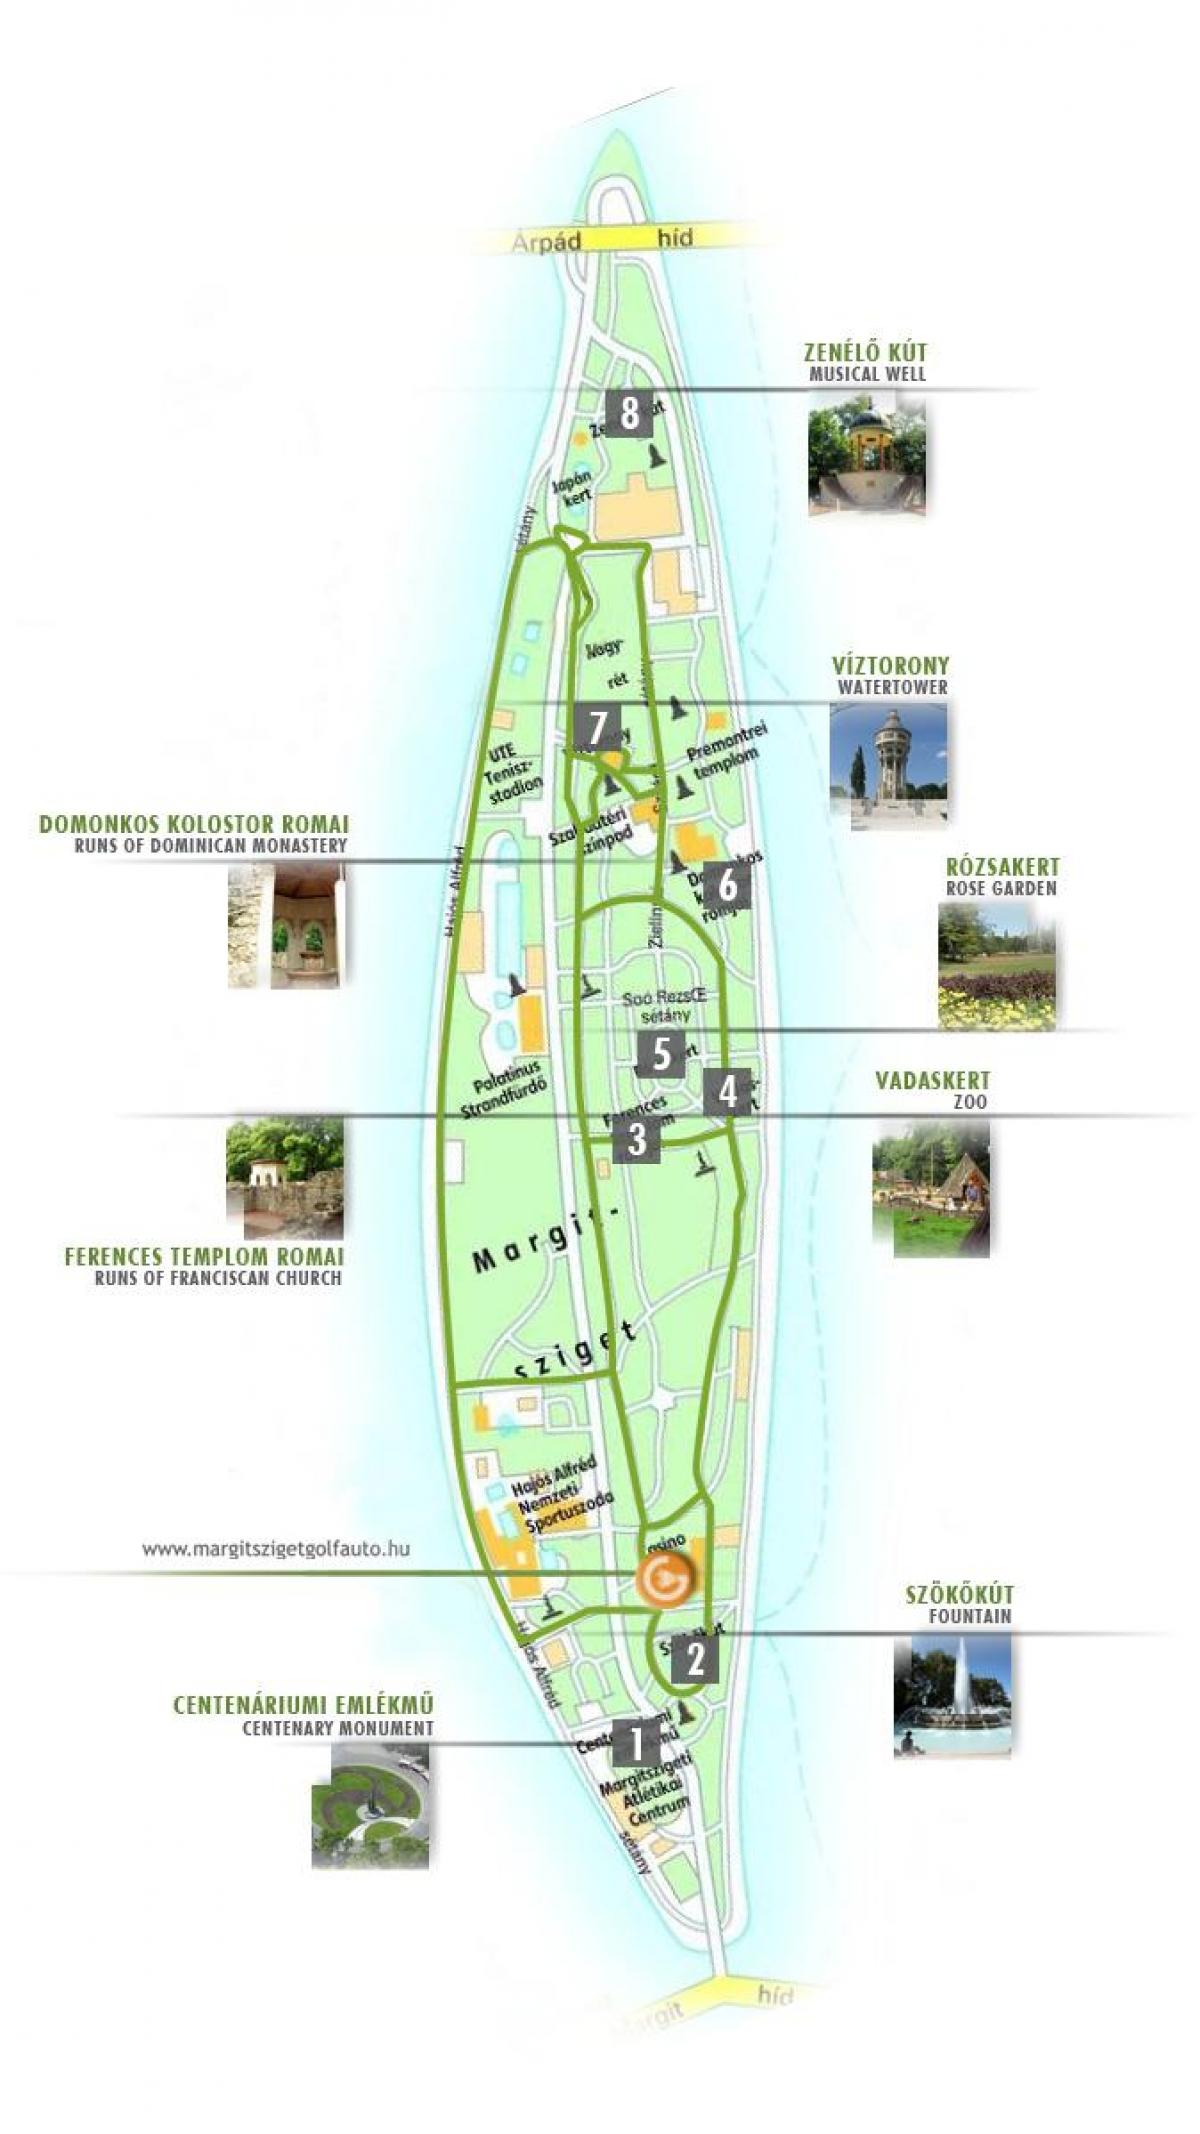 کا نقشہ مارگریٹ جزیرے بڈاپسٹ